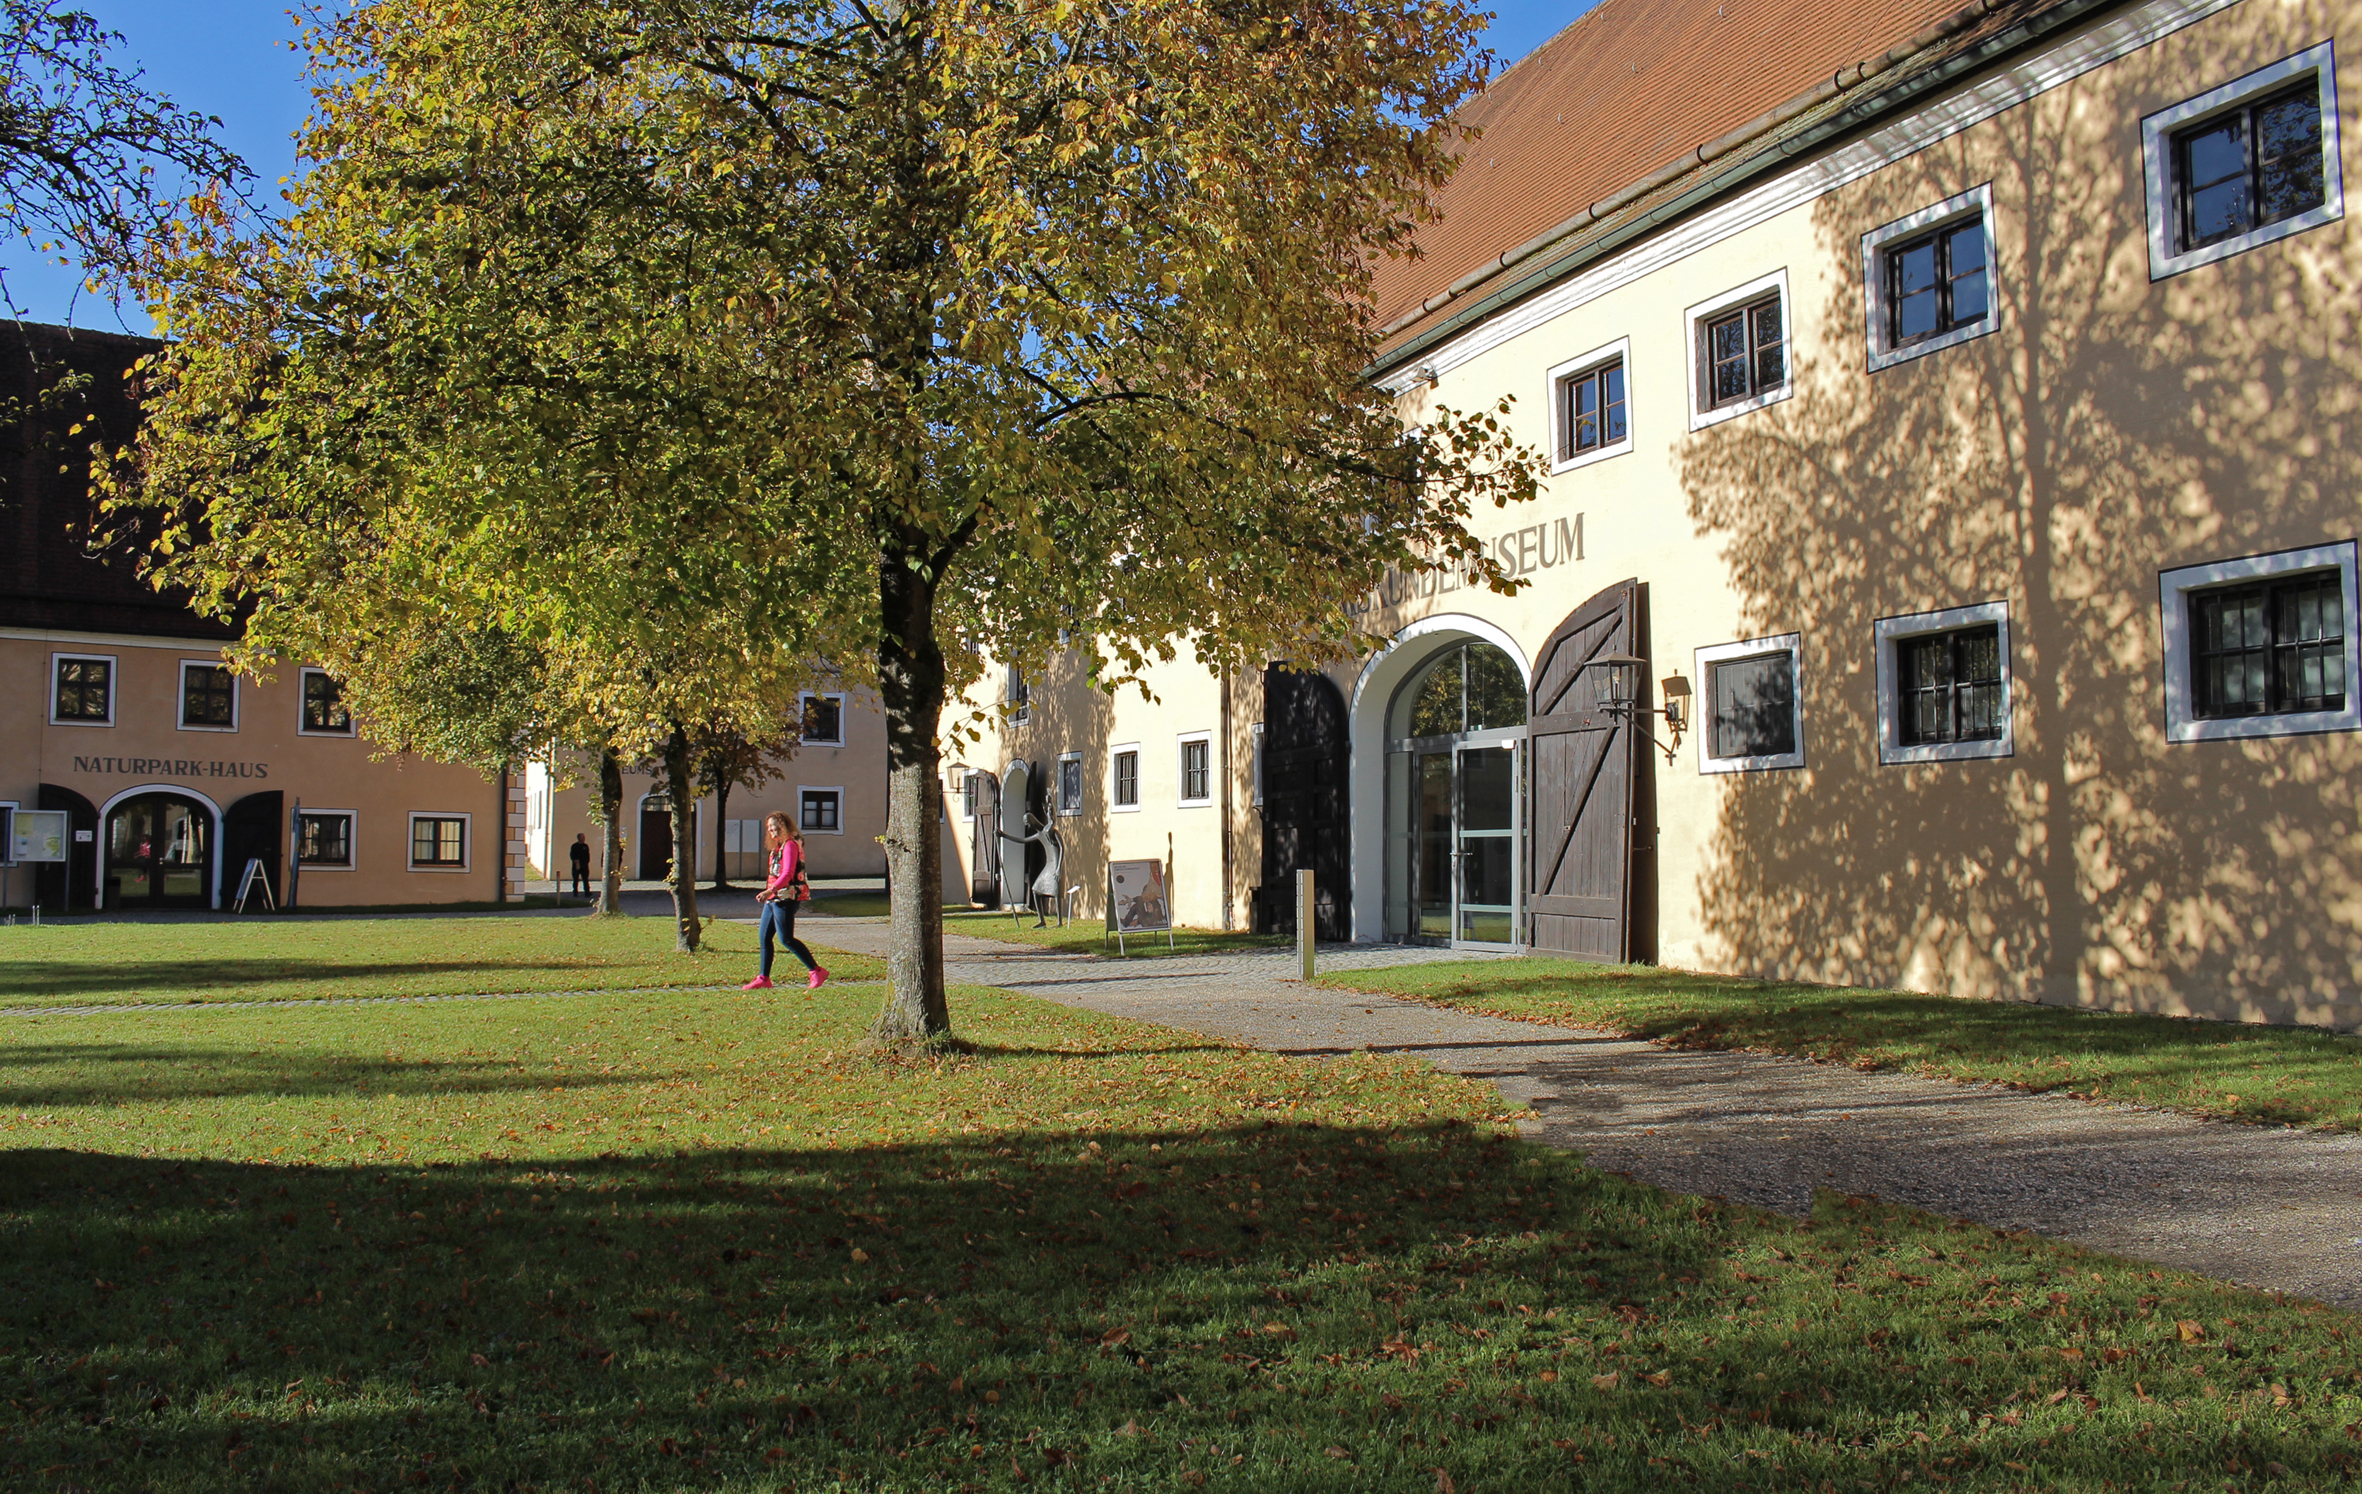 Museumseingang neben Baum mit buntem Herbstlaub